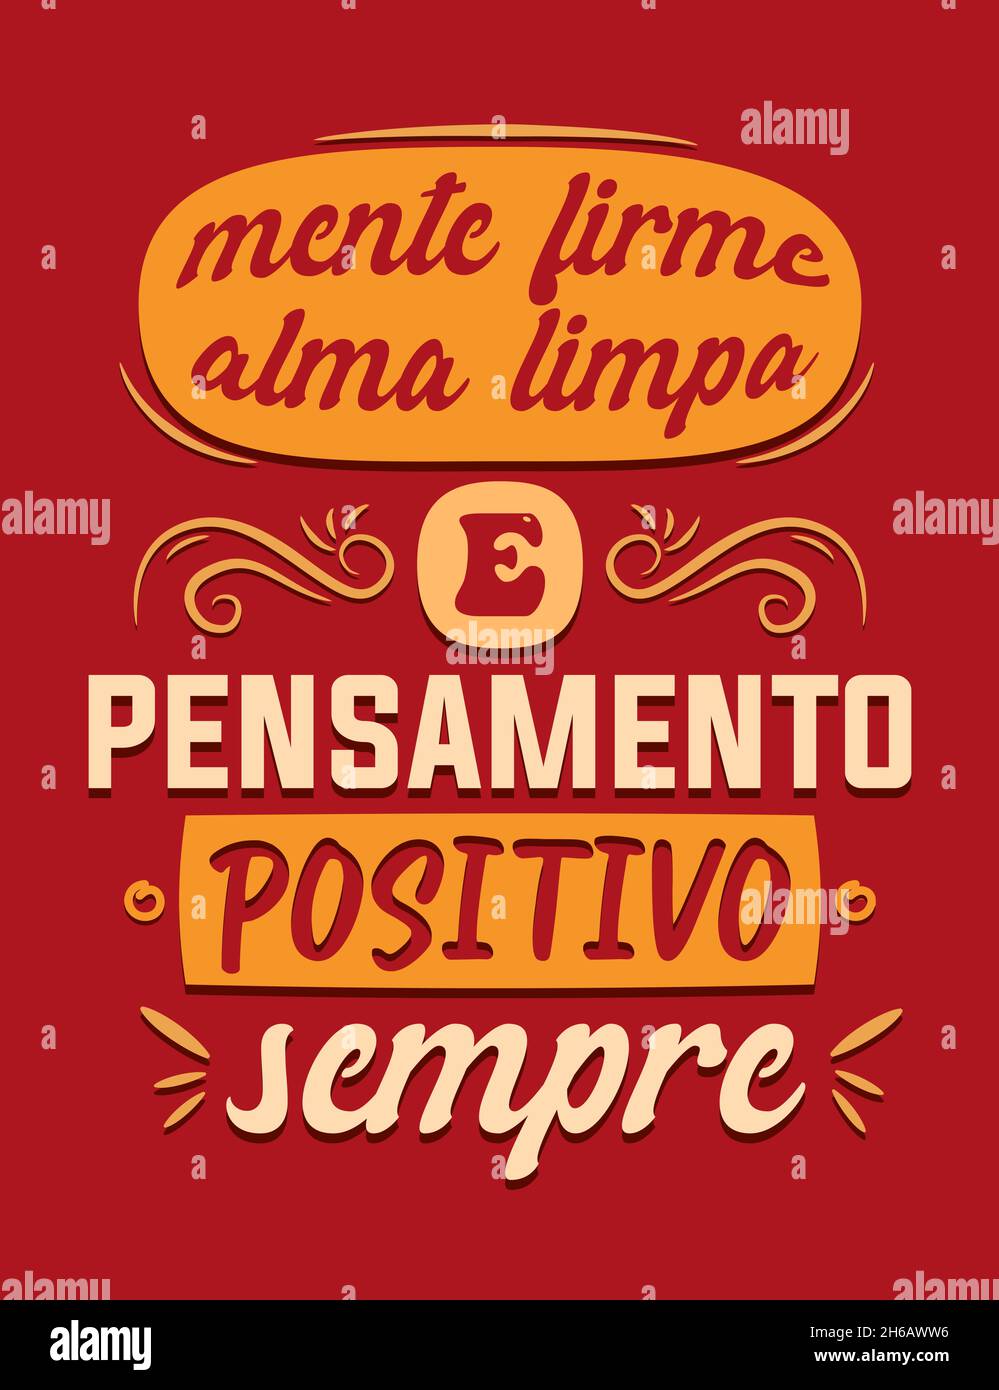 Affiche portugaise inspirante.Traduction : 'esprit sain, âme propre et pensée positive toujours' Illustration de Vecteur